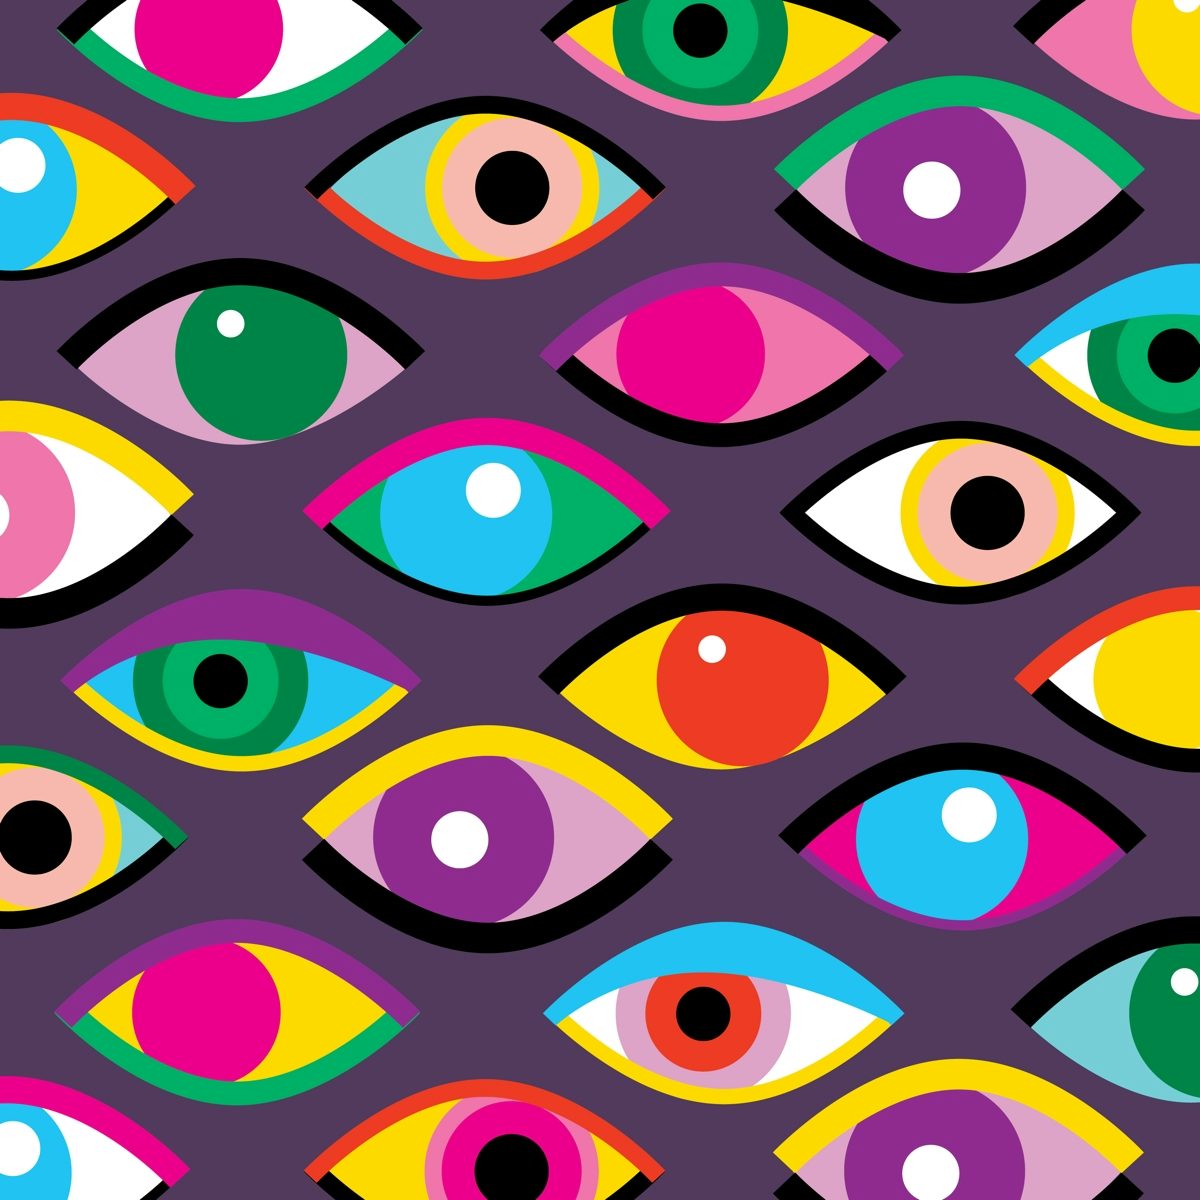 Anorak magazine wants to see your eyeballs